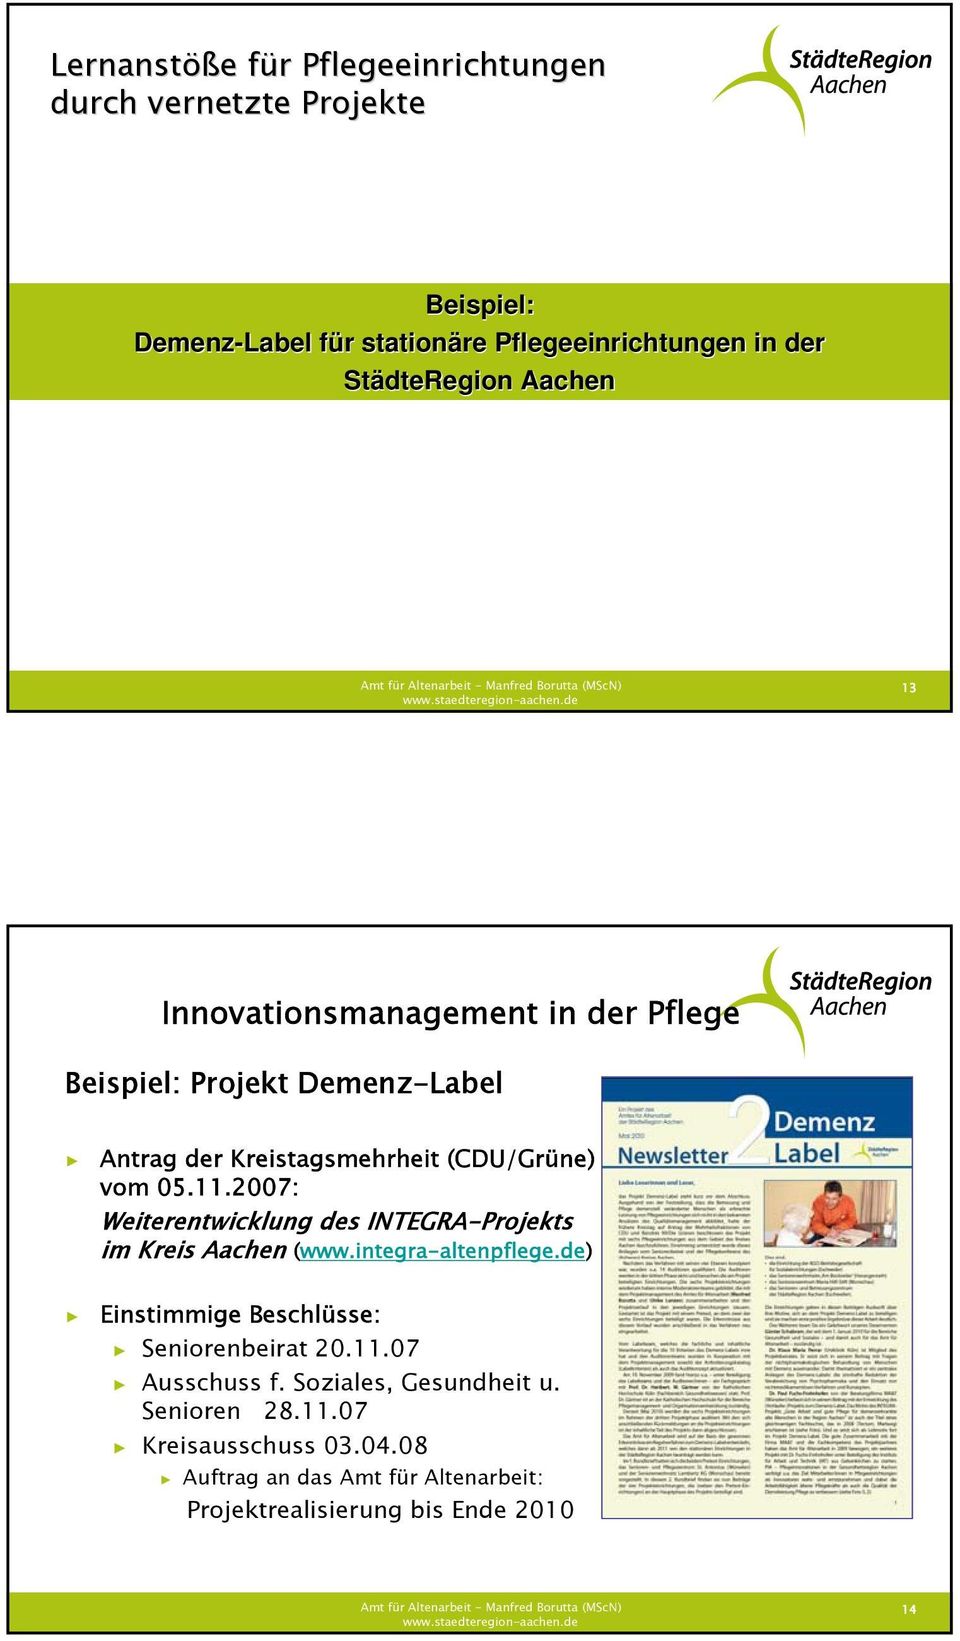 2007: Weiterentwicklung des INTEGRA-Projekts im Kreis Aachen (www.integra-altenpflege.